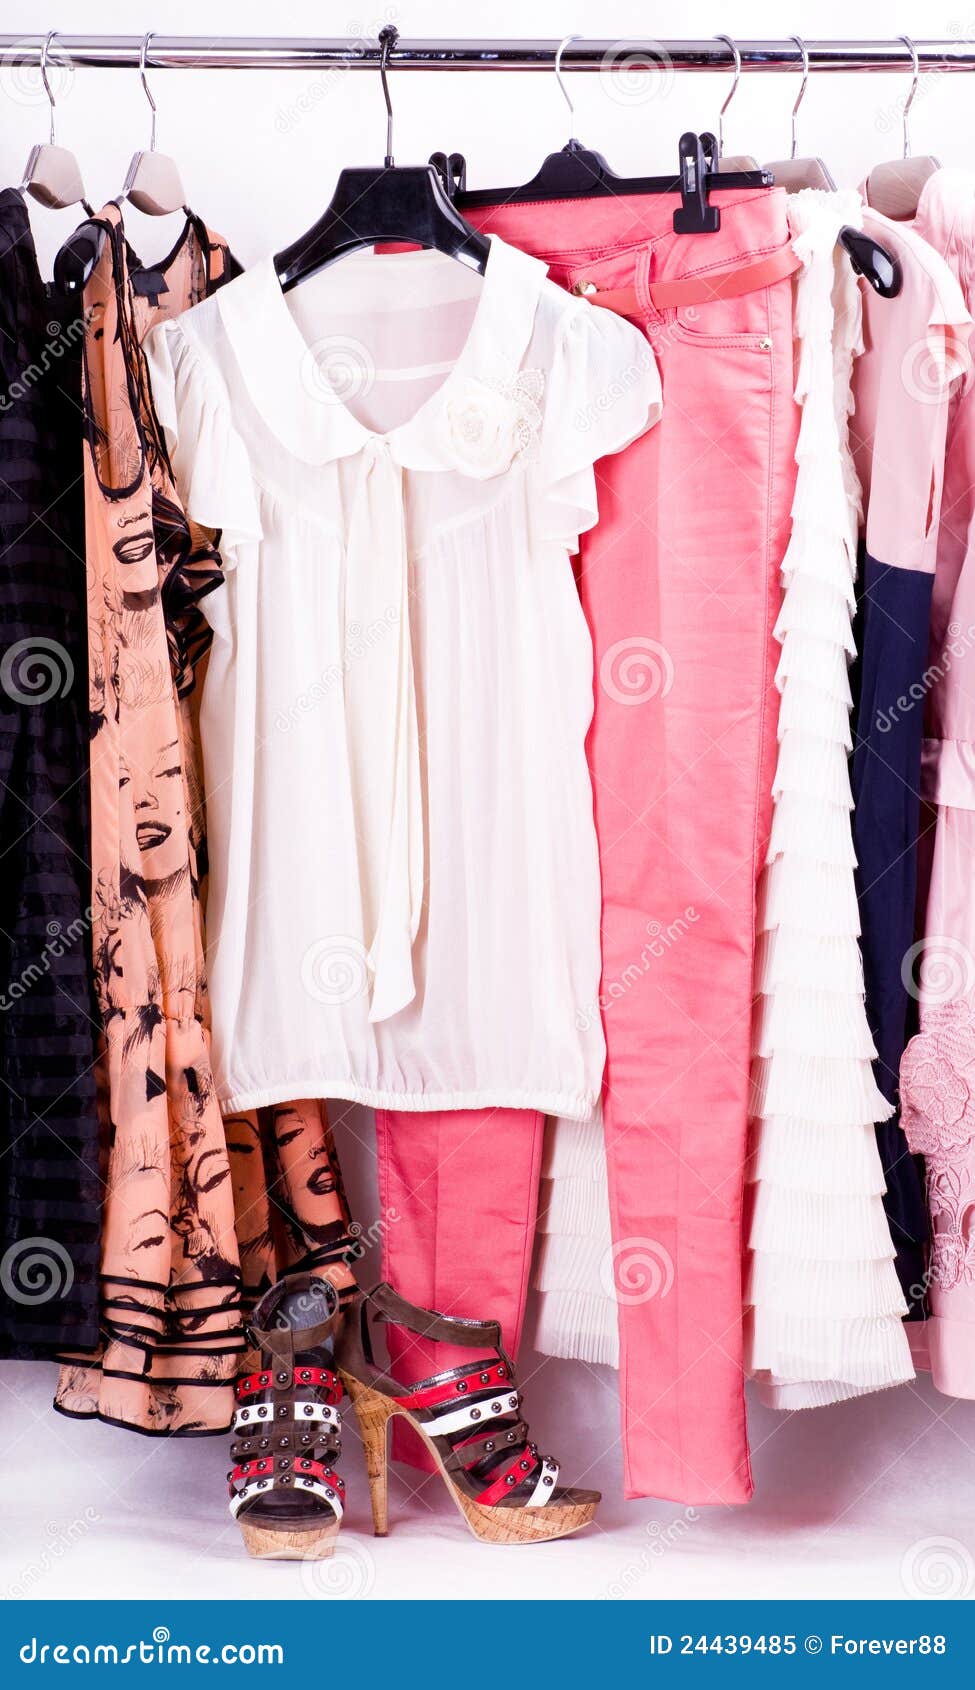 Stock Image Image Of Beauty Fashionable Glamour Dress 24439485 